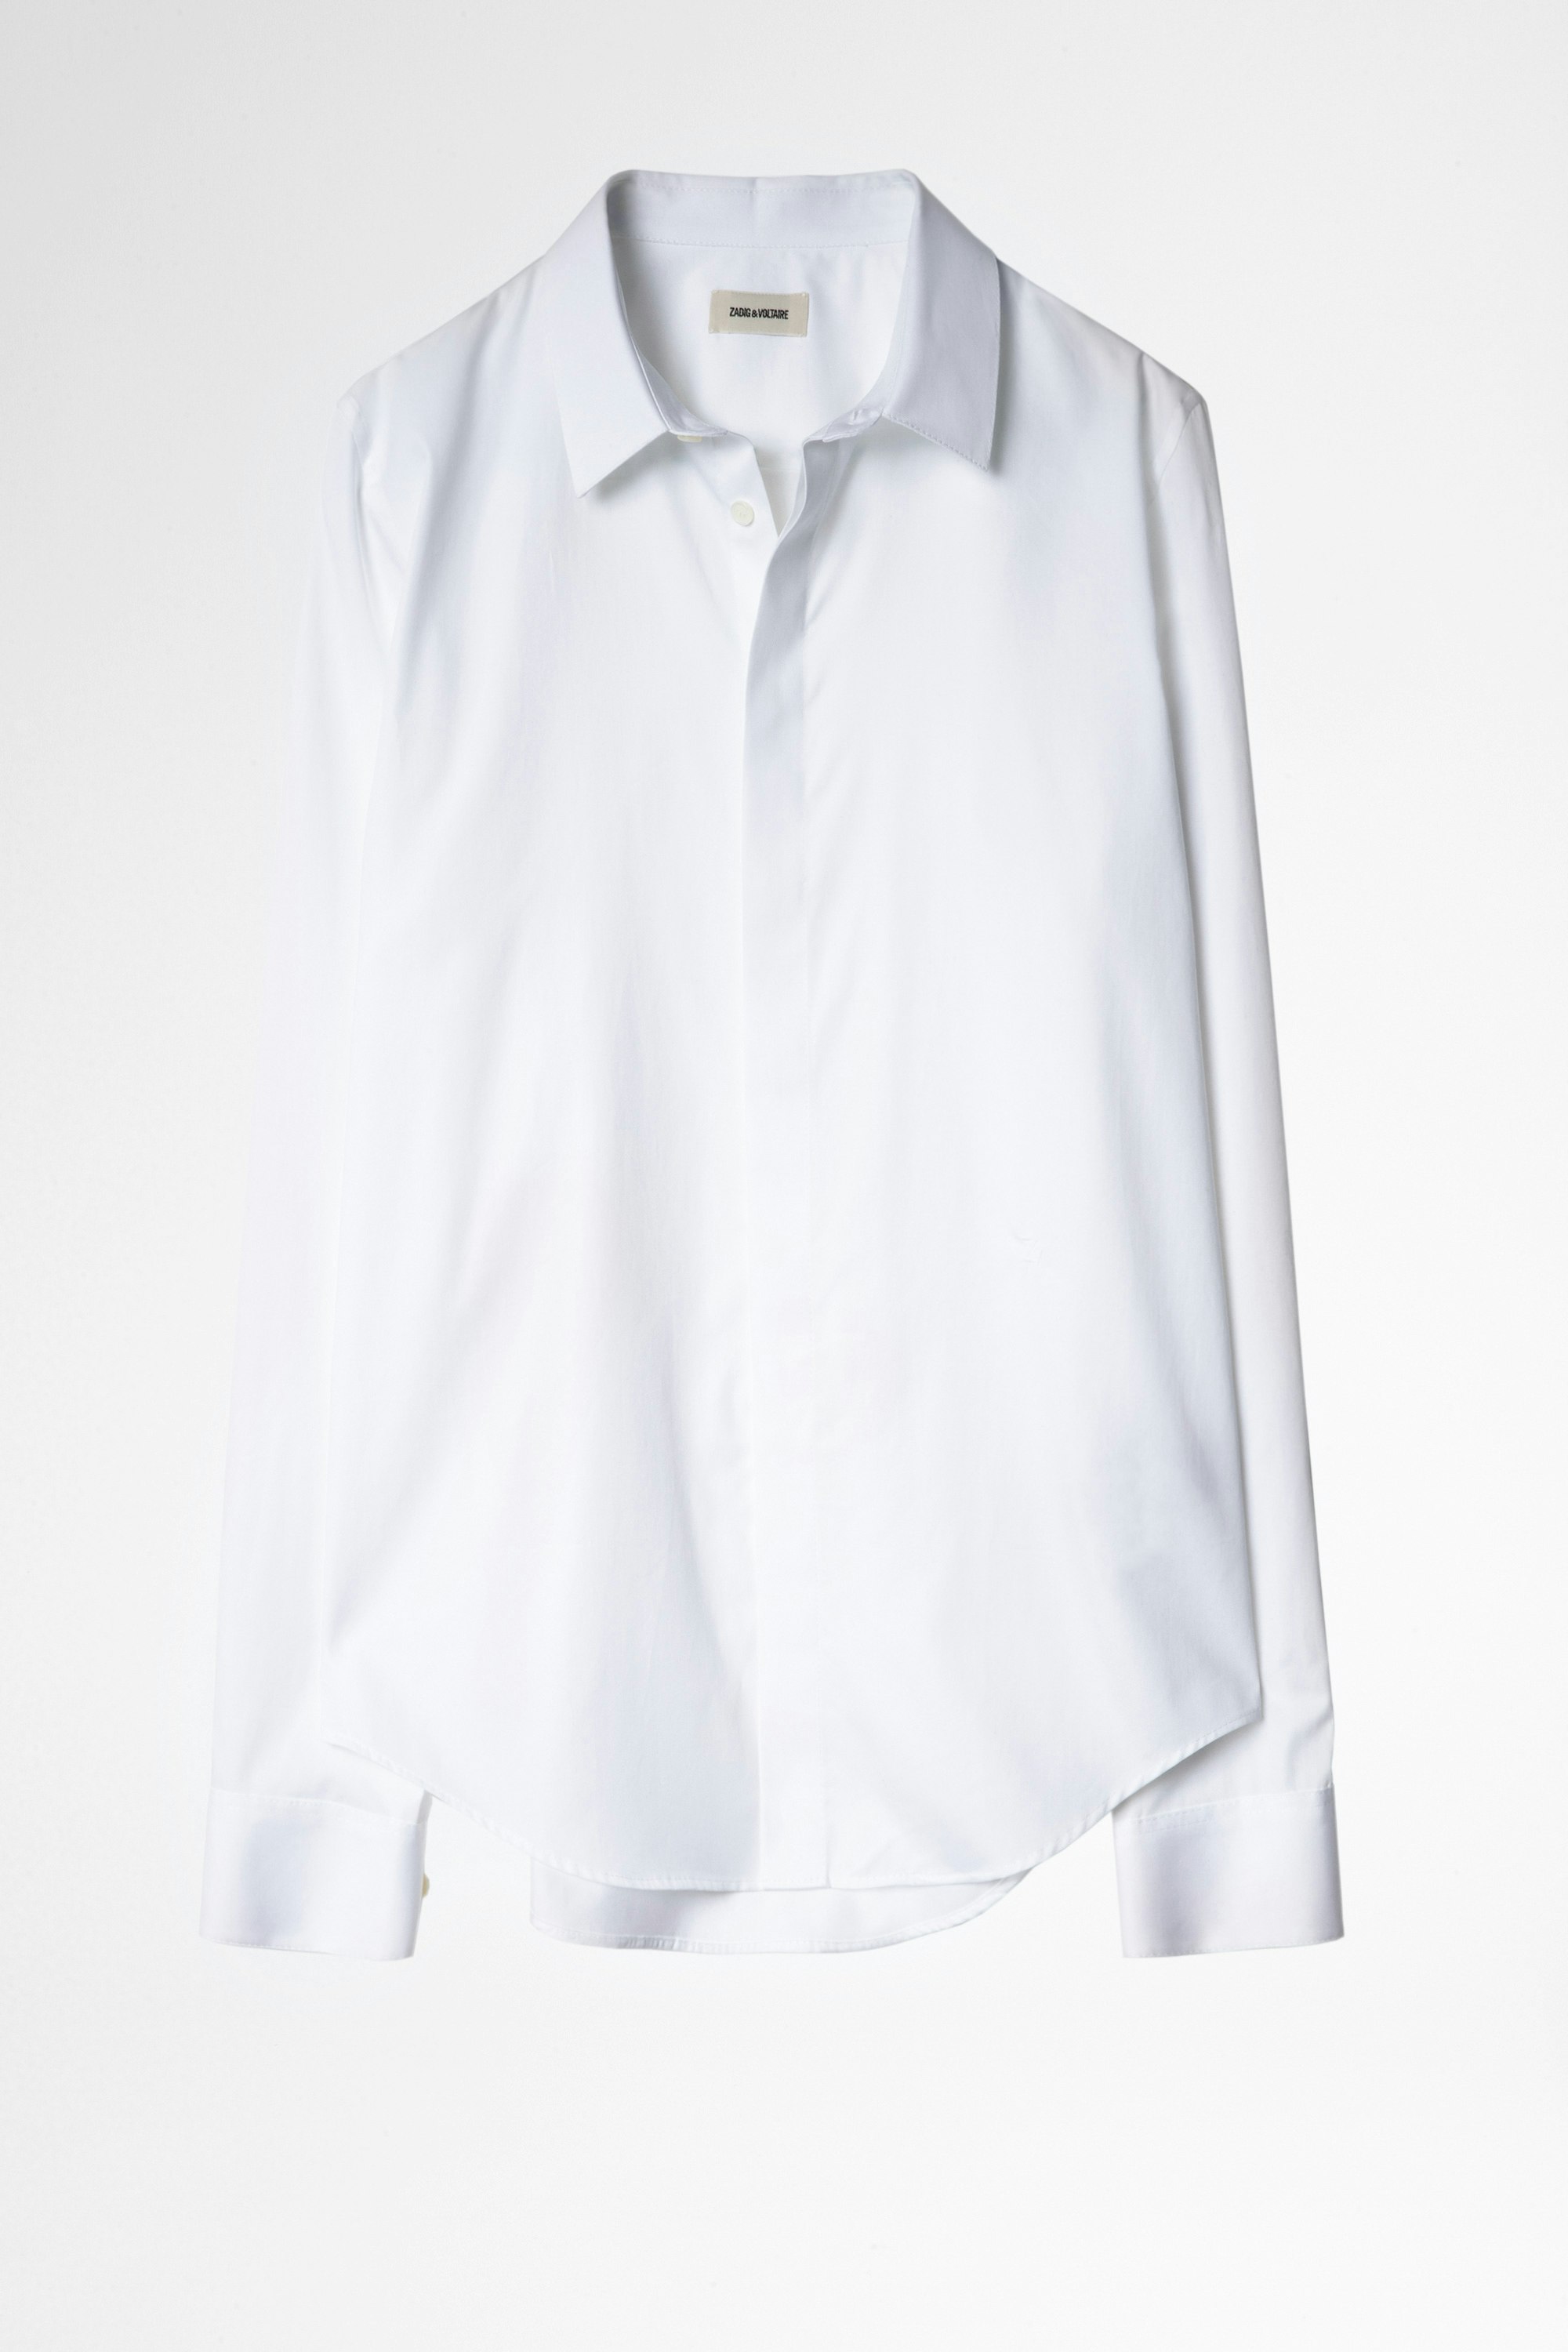 Hemd Sydney Pop Weißes Herrenhemd aus bestickter Baumwolle.